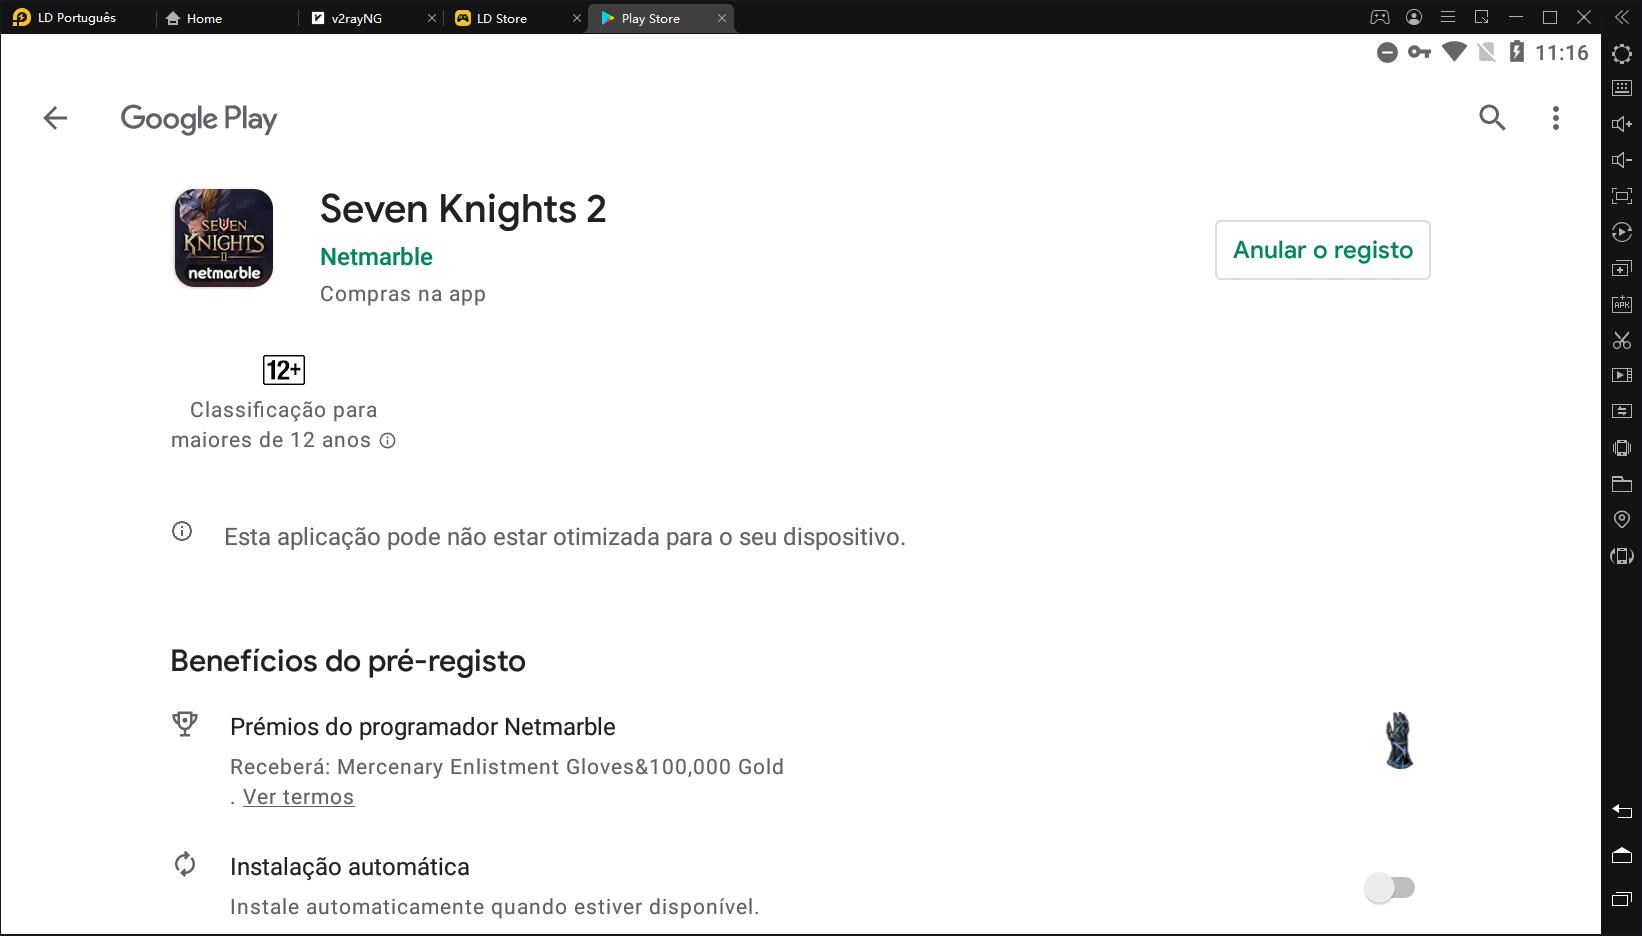 Seven Knights 2 será lançado em novembro！